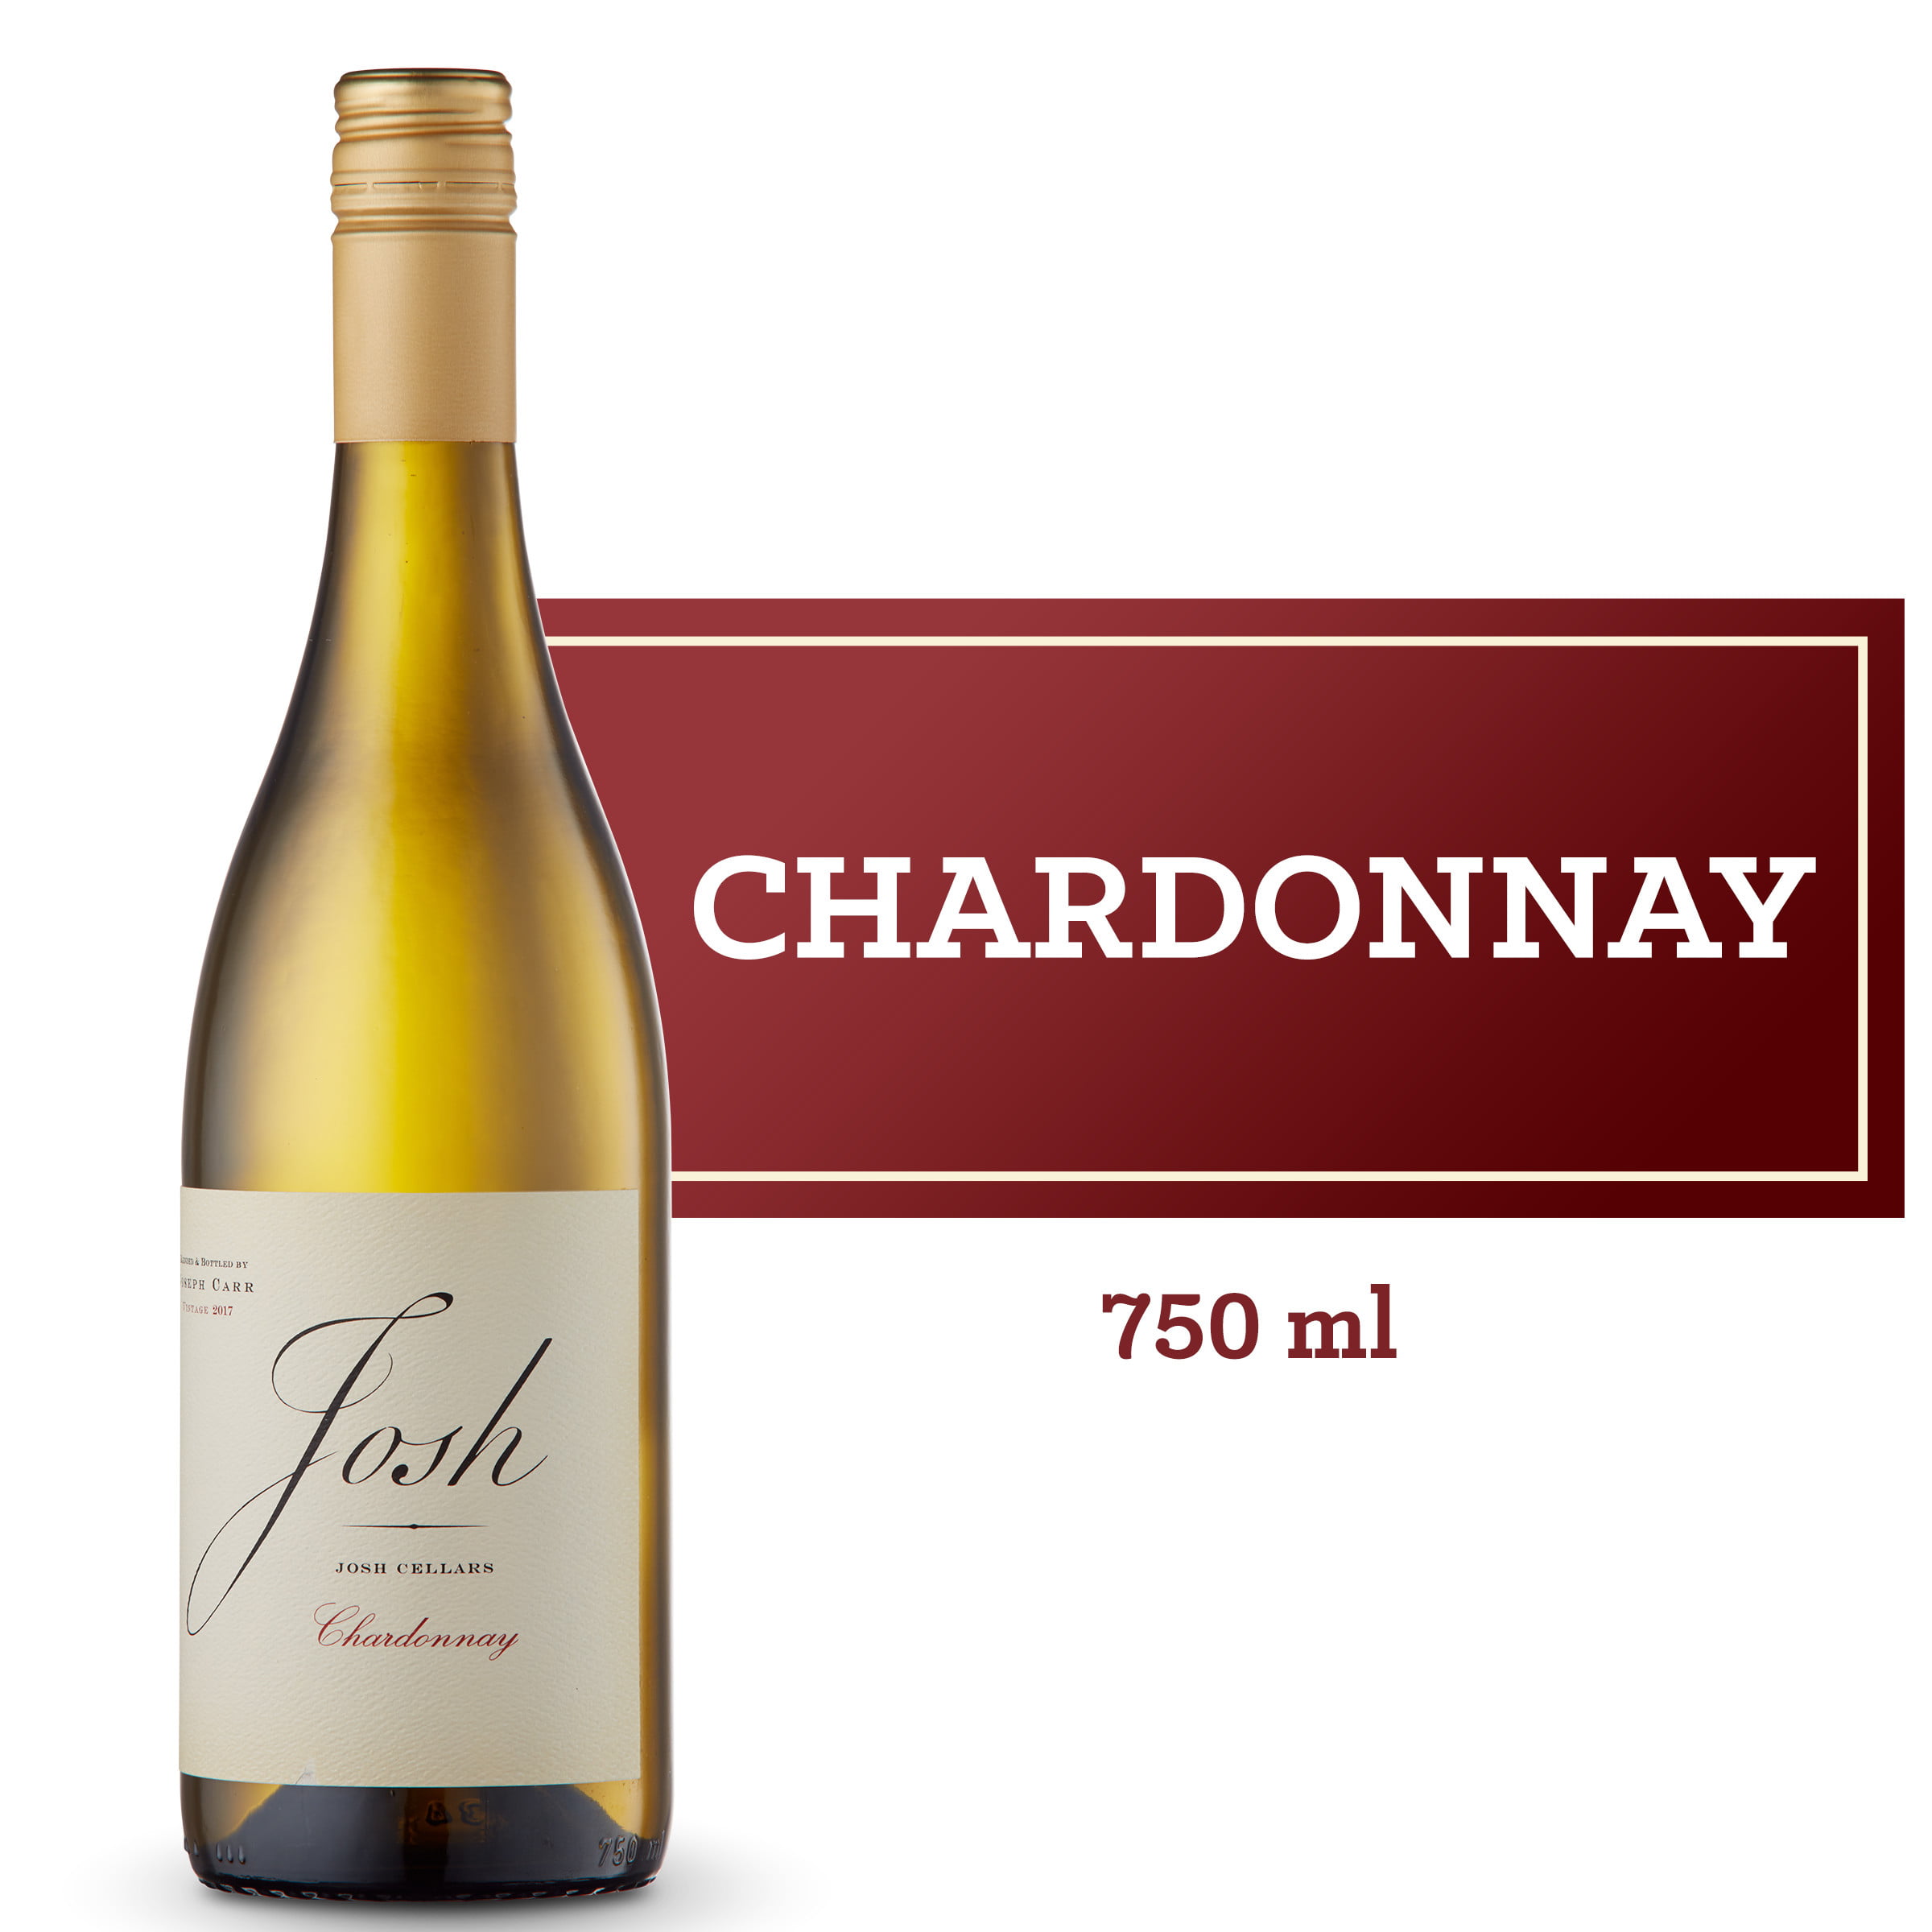 Josh Cellars Chardonnay, 750ml